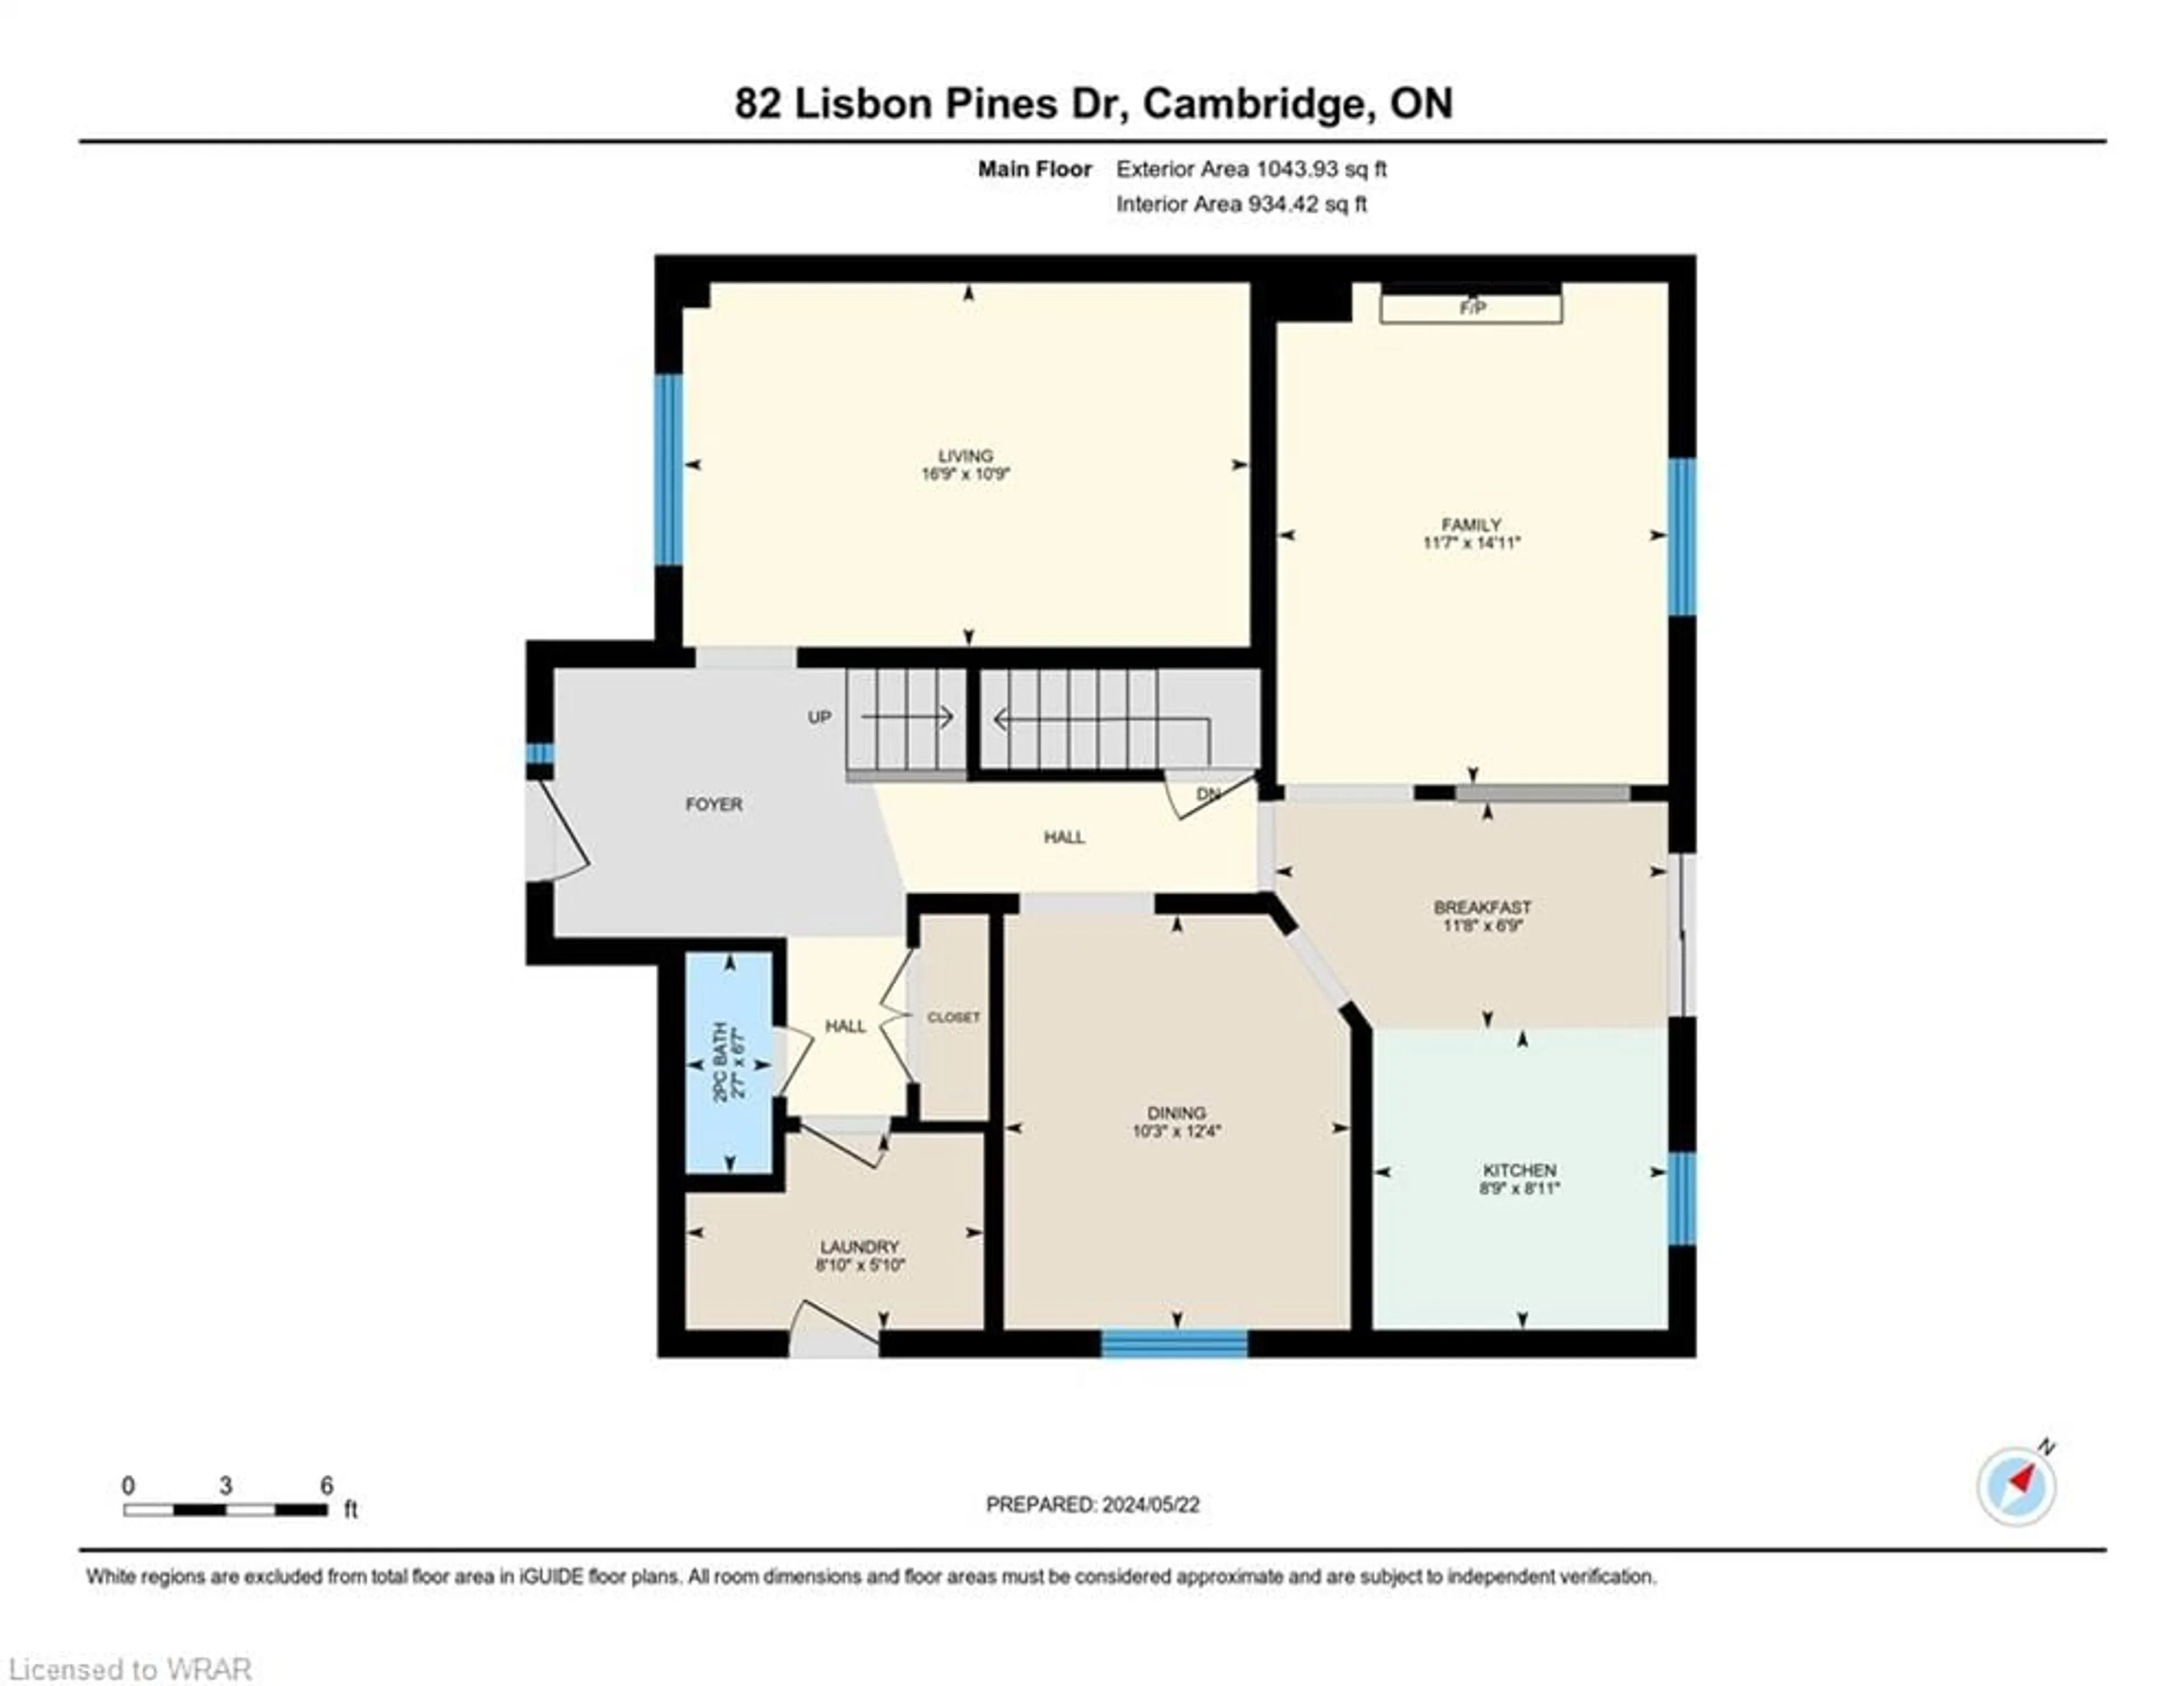 Floor plan for 82 Lisbon Pines Dr, Cambridge Ontario N1R 8A1